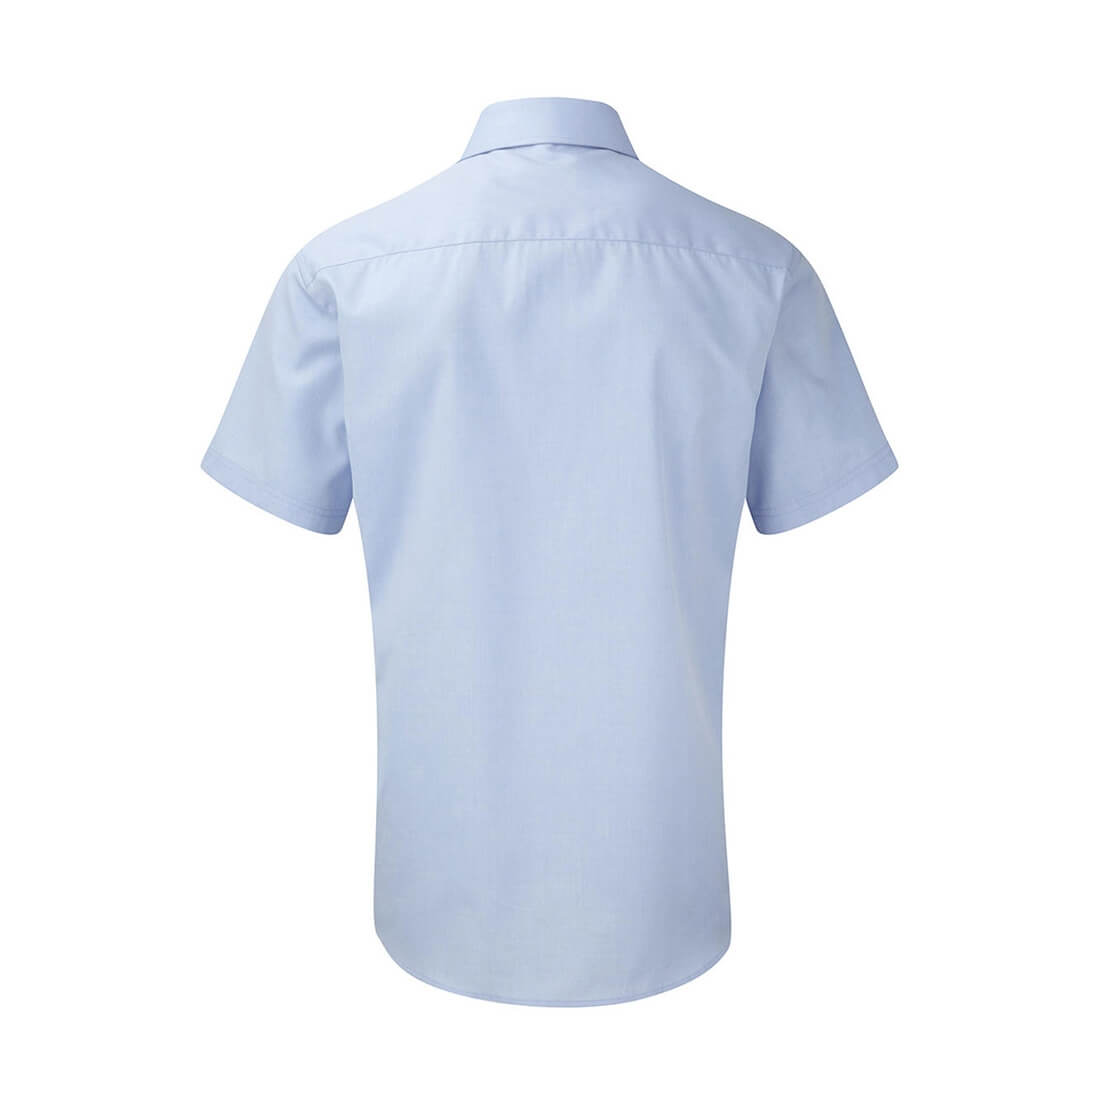 Camicia uomo Herringbone (lisca di pesce) - Abbigliamento di protezione